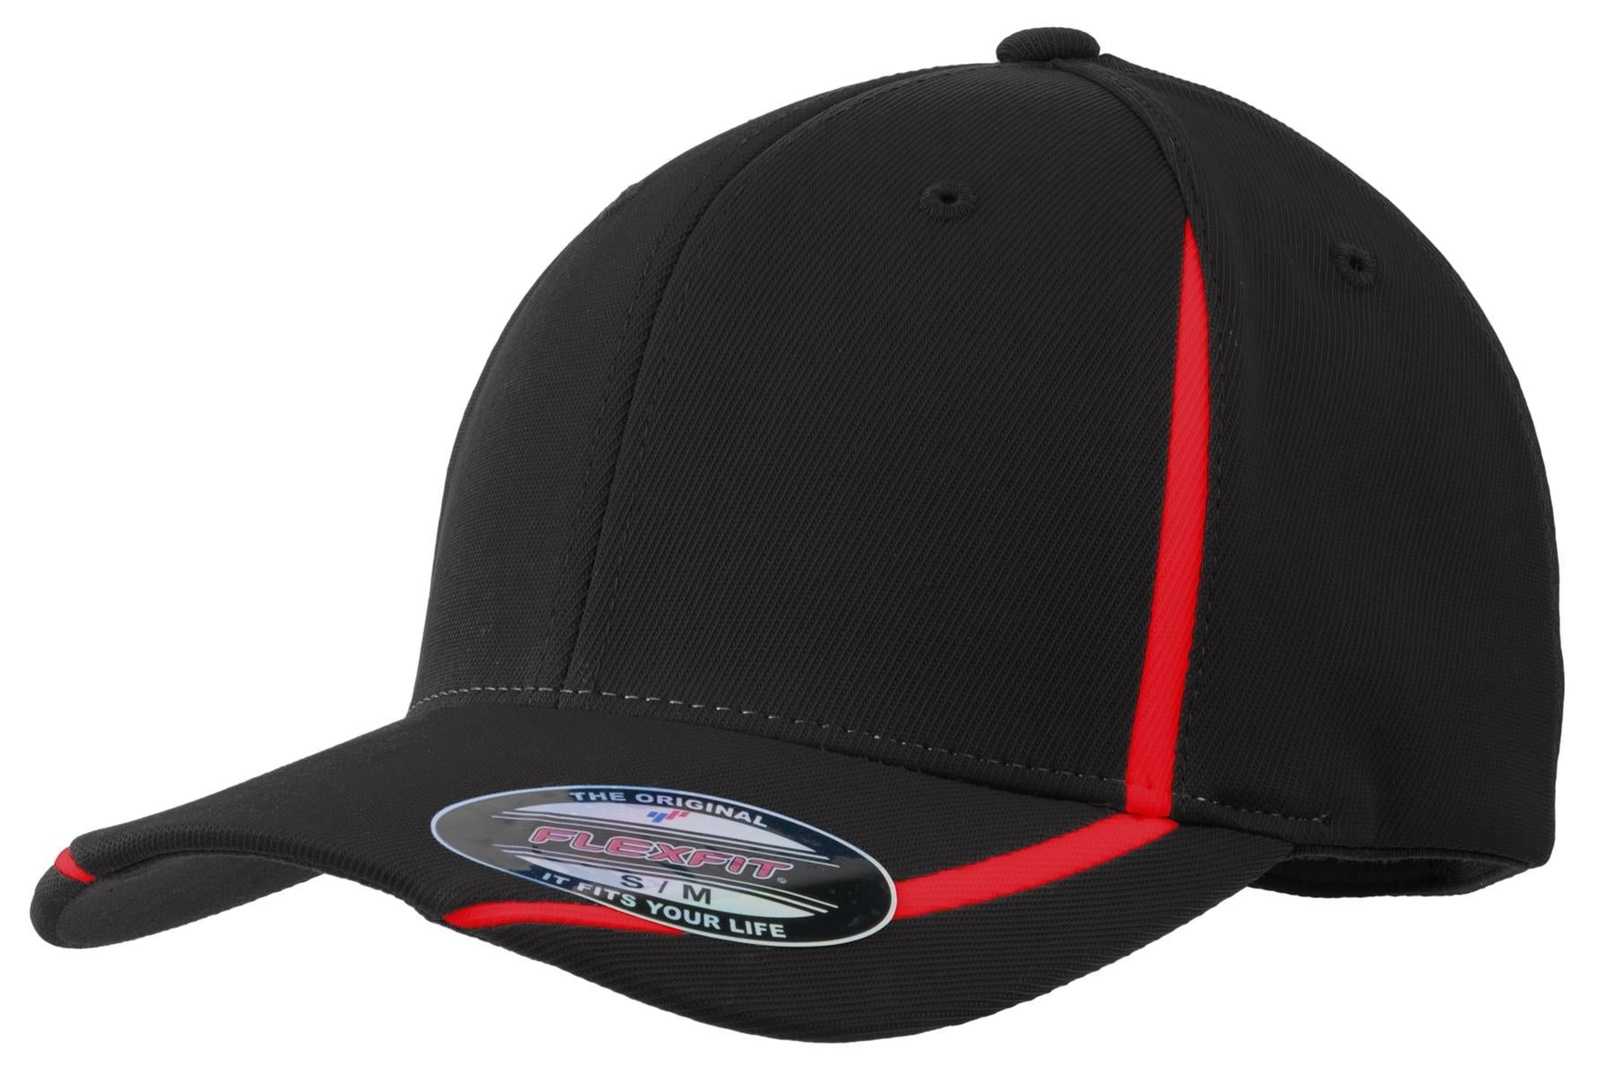 Sport-Tek STC16 Flexfit Performance Colorblock Cap - Black True Red - HIT a Double - 1